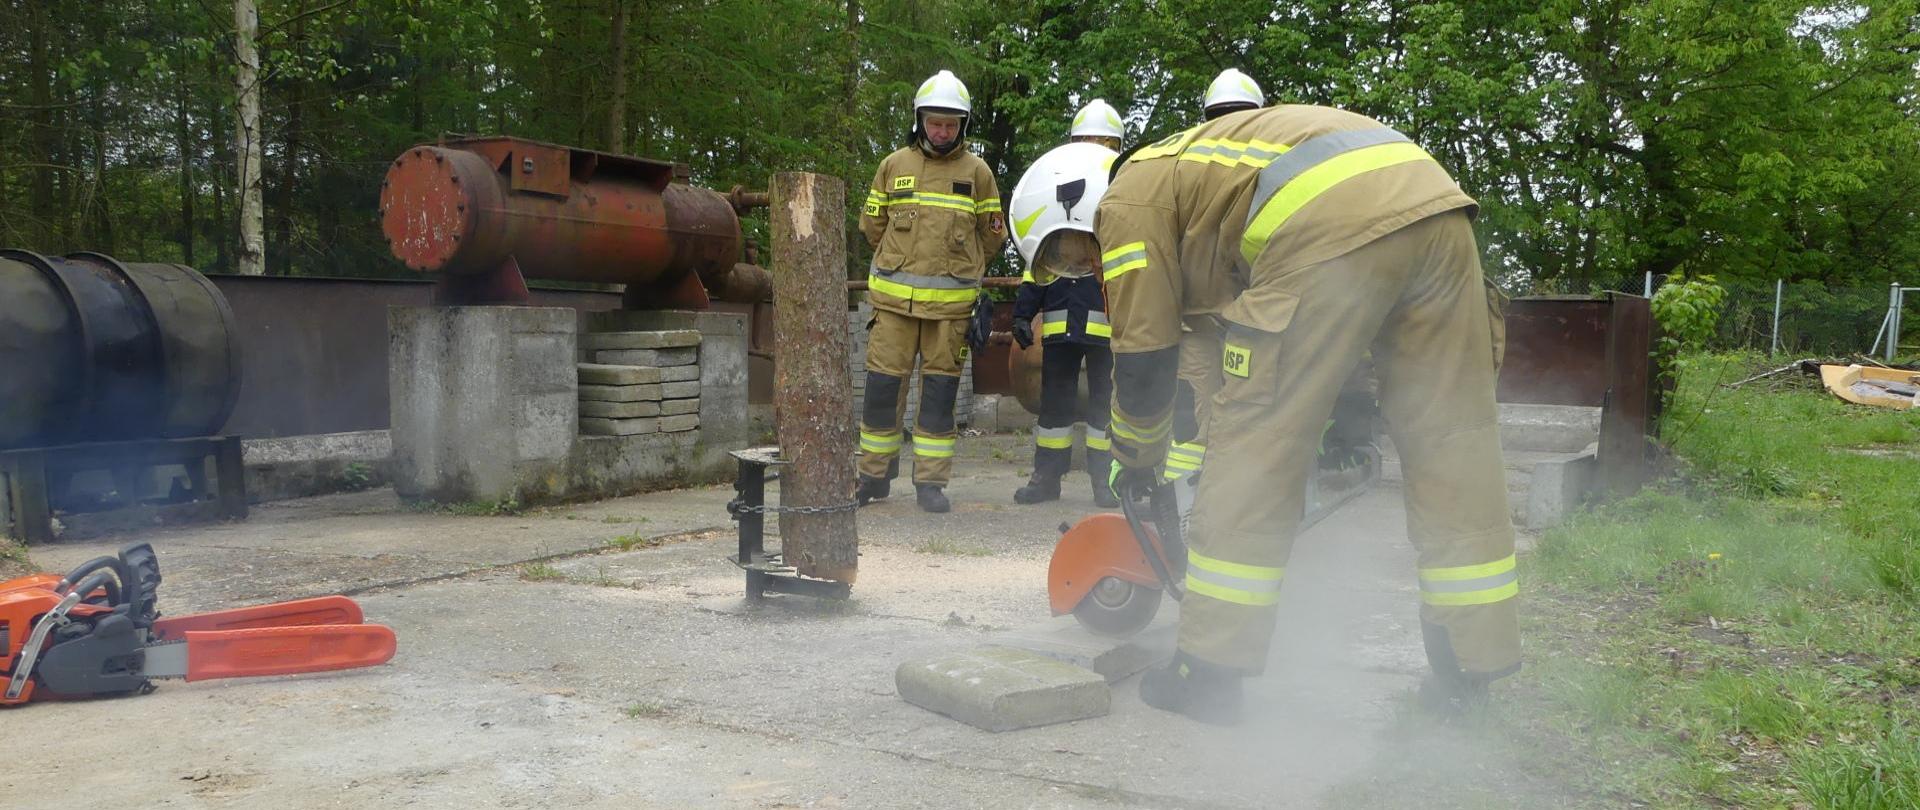 Zdjęcie przedstawia element egzaminu praktycznego kończącego szkolenie podstawowe strażaków ratowników Ochotniczych Straży Pożarnych. Strażacy OSP podczas egzaminu z obsługi pił i pilarek. NA pierwszym planie strażak tnie krawężnik betonowy.